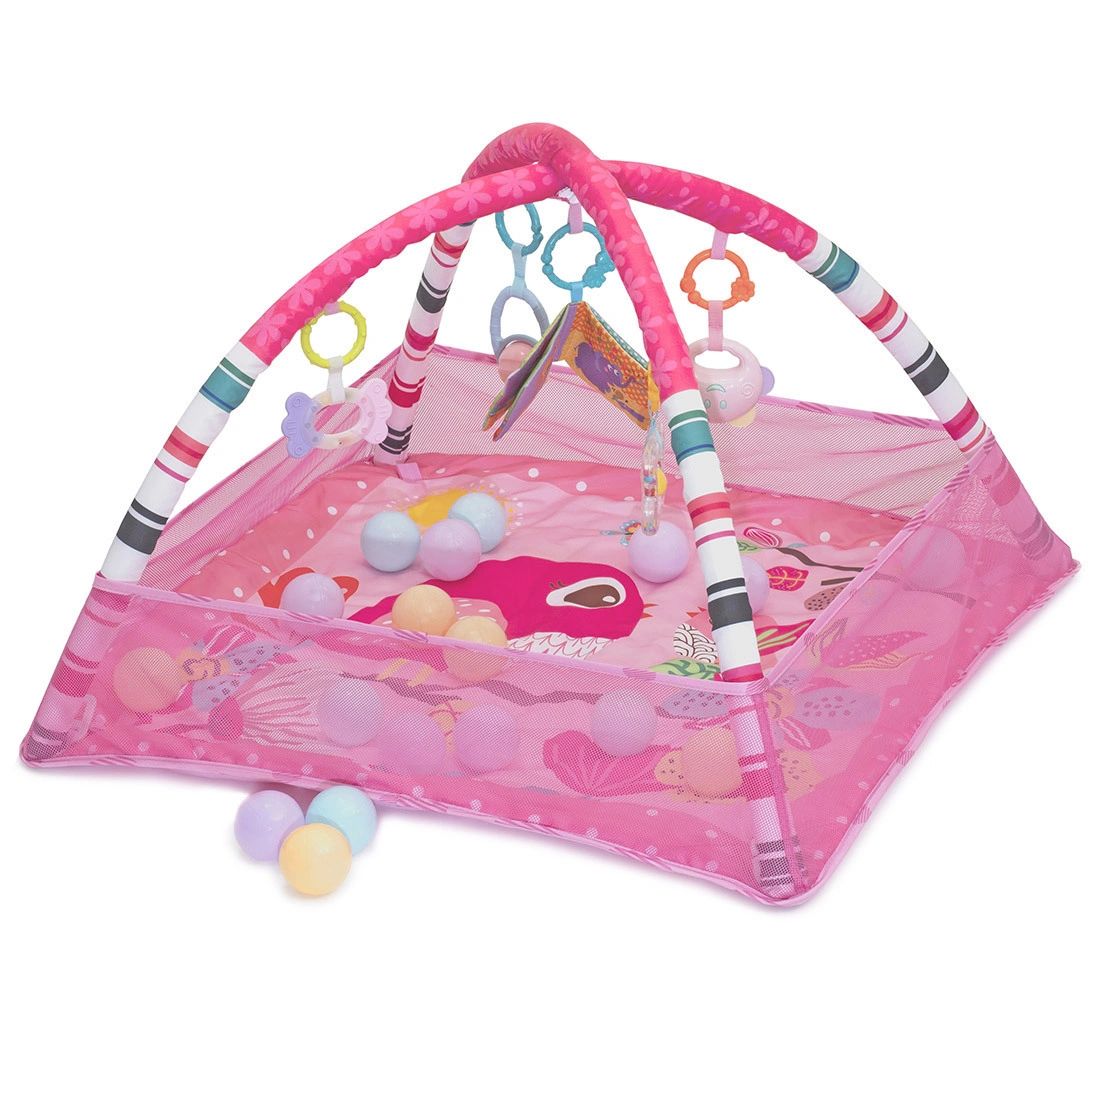 фото Развивающий коврик для новорожденного с игрушками nuовi в-fкid-р (розовый) funkids